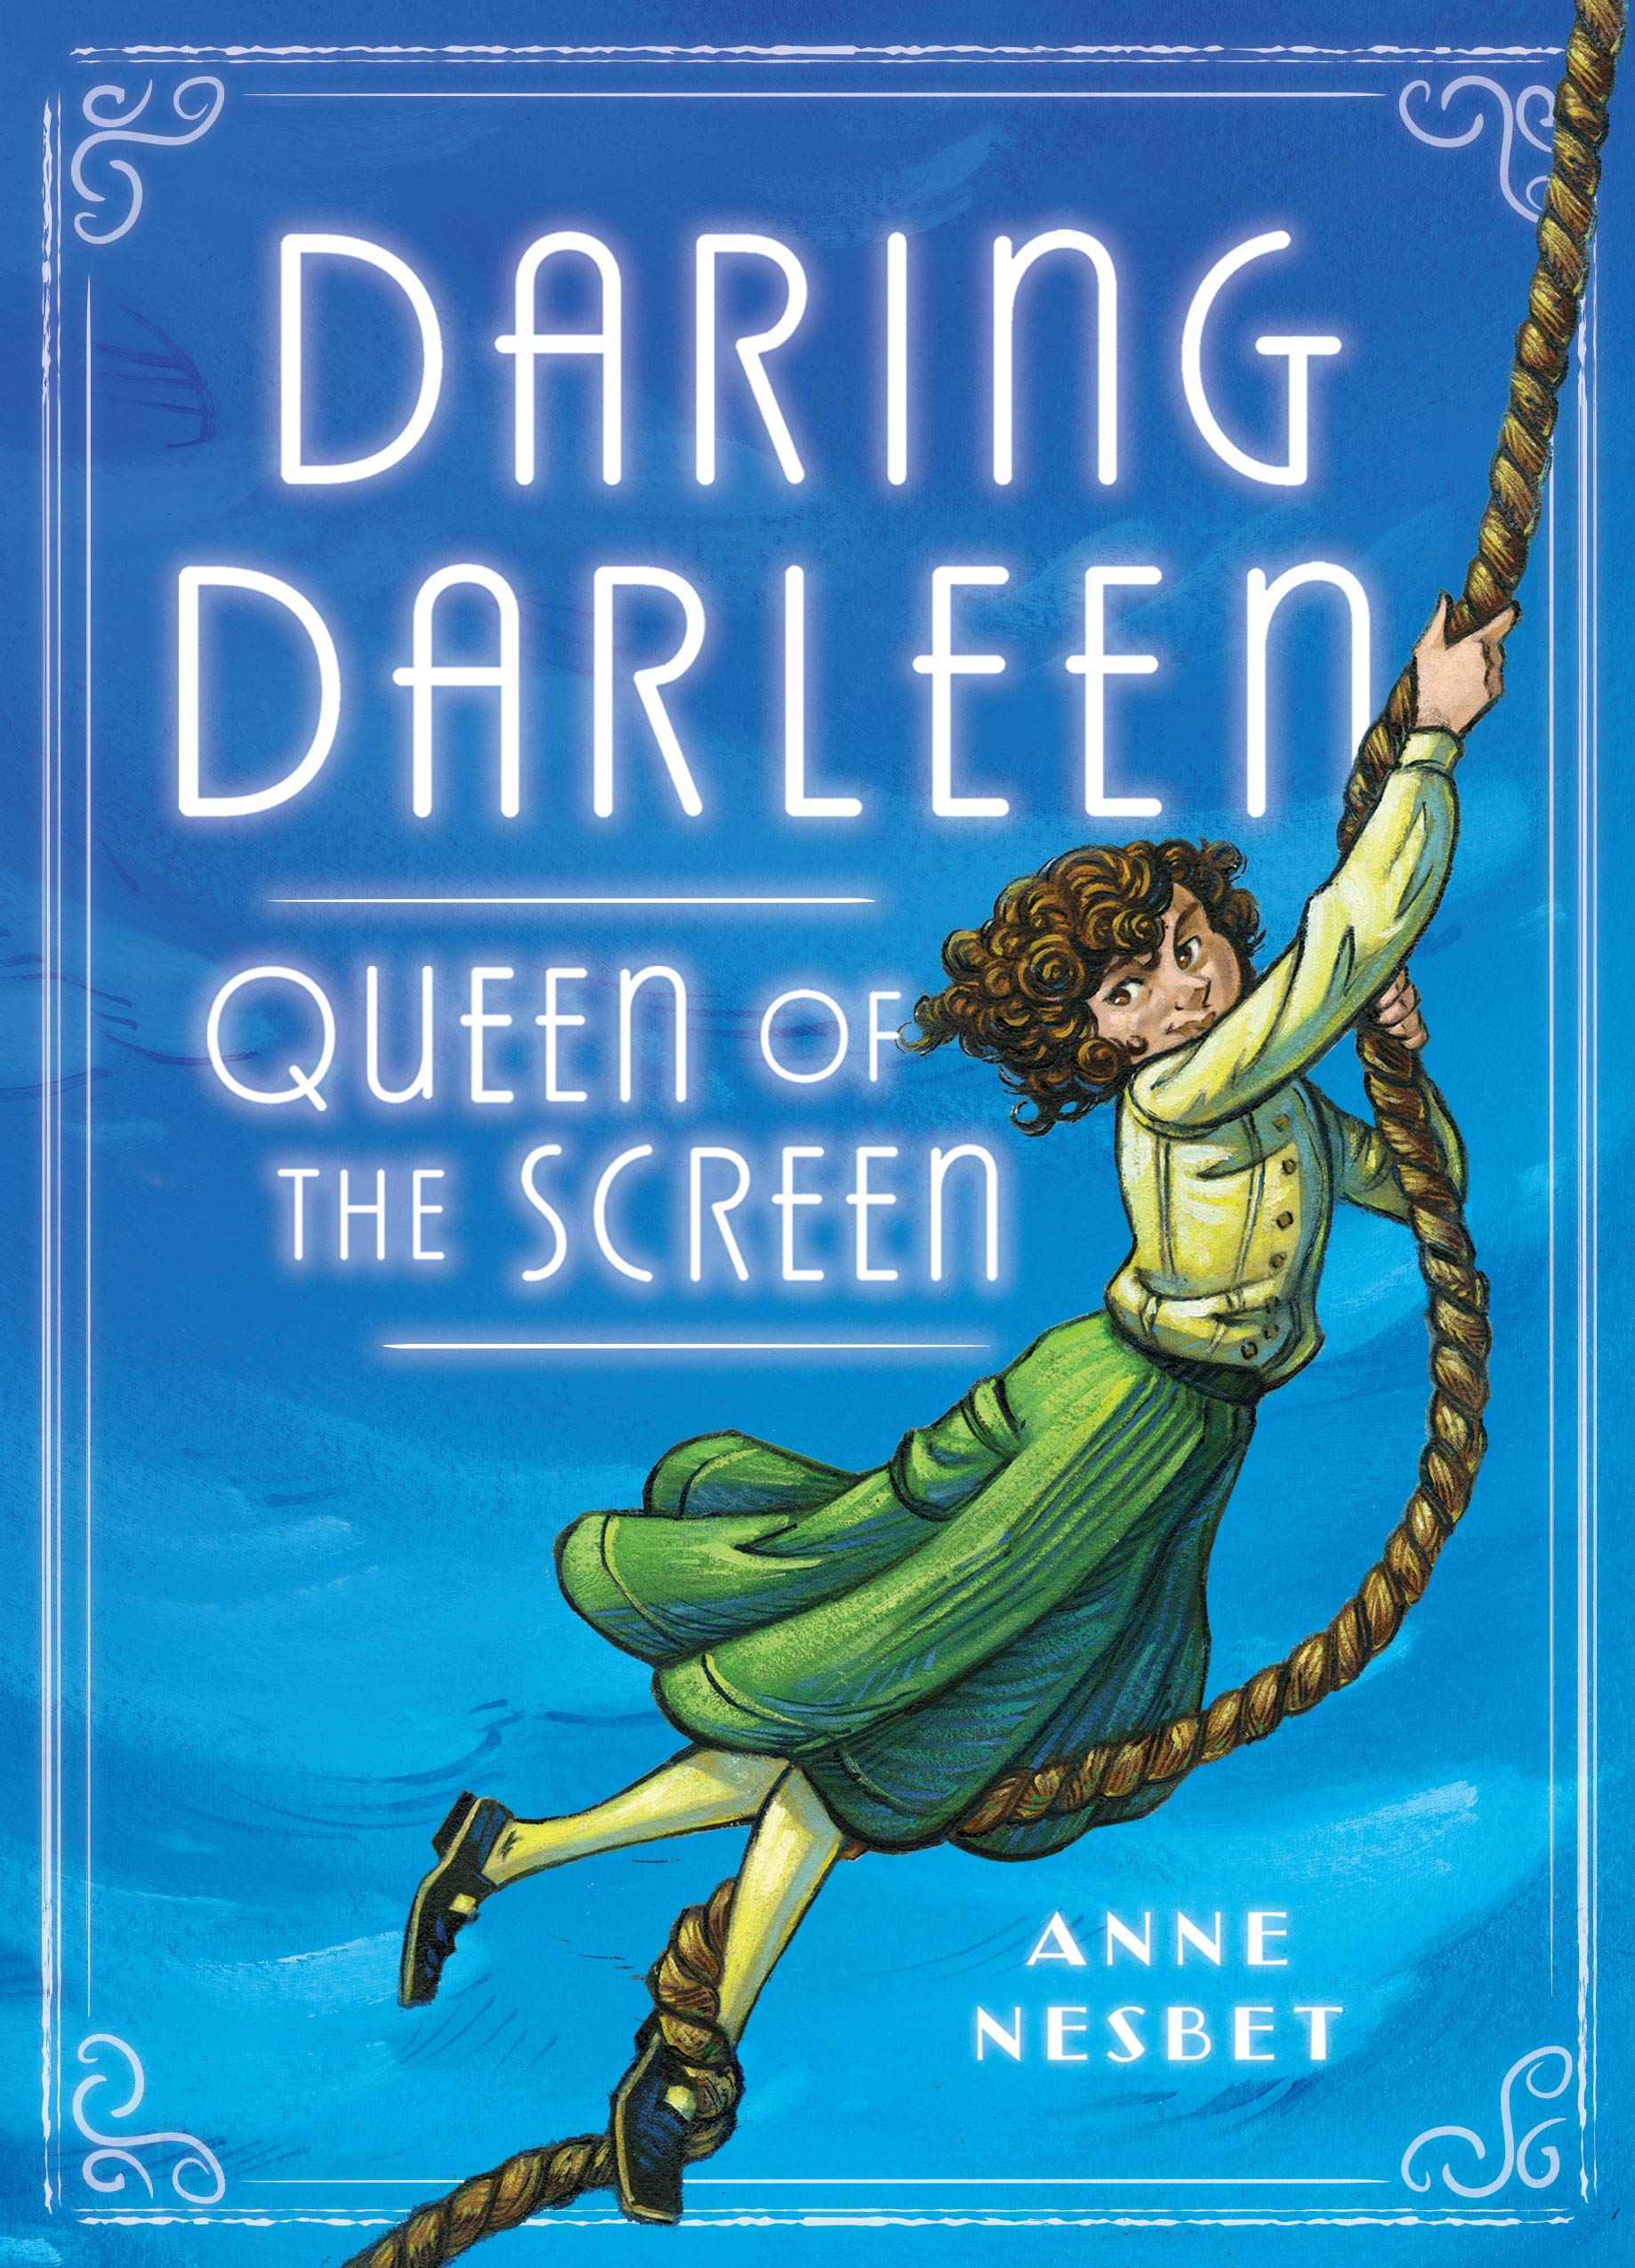 Darling Darleen Queen of the Screen